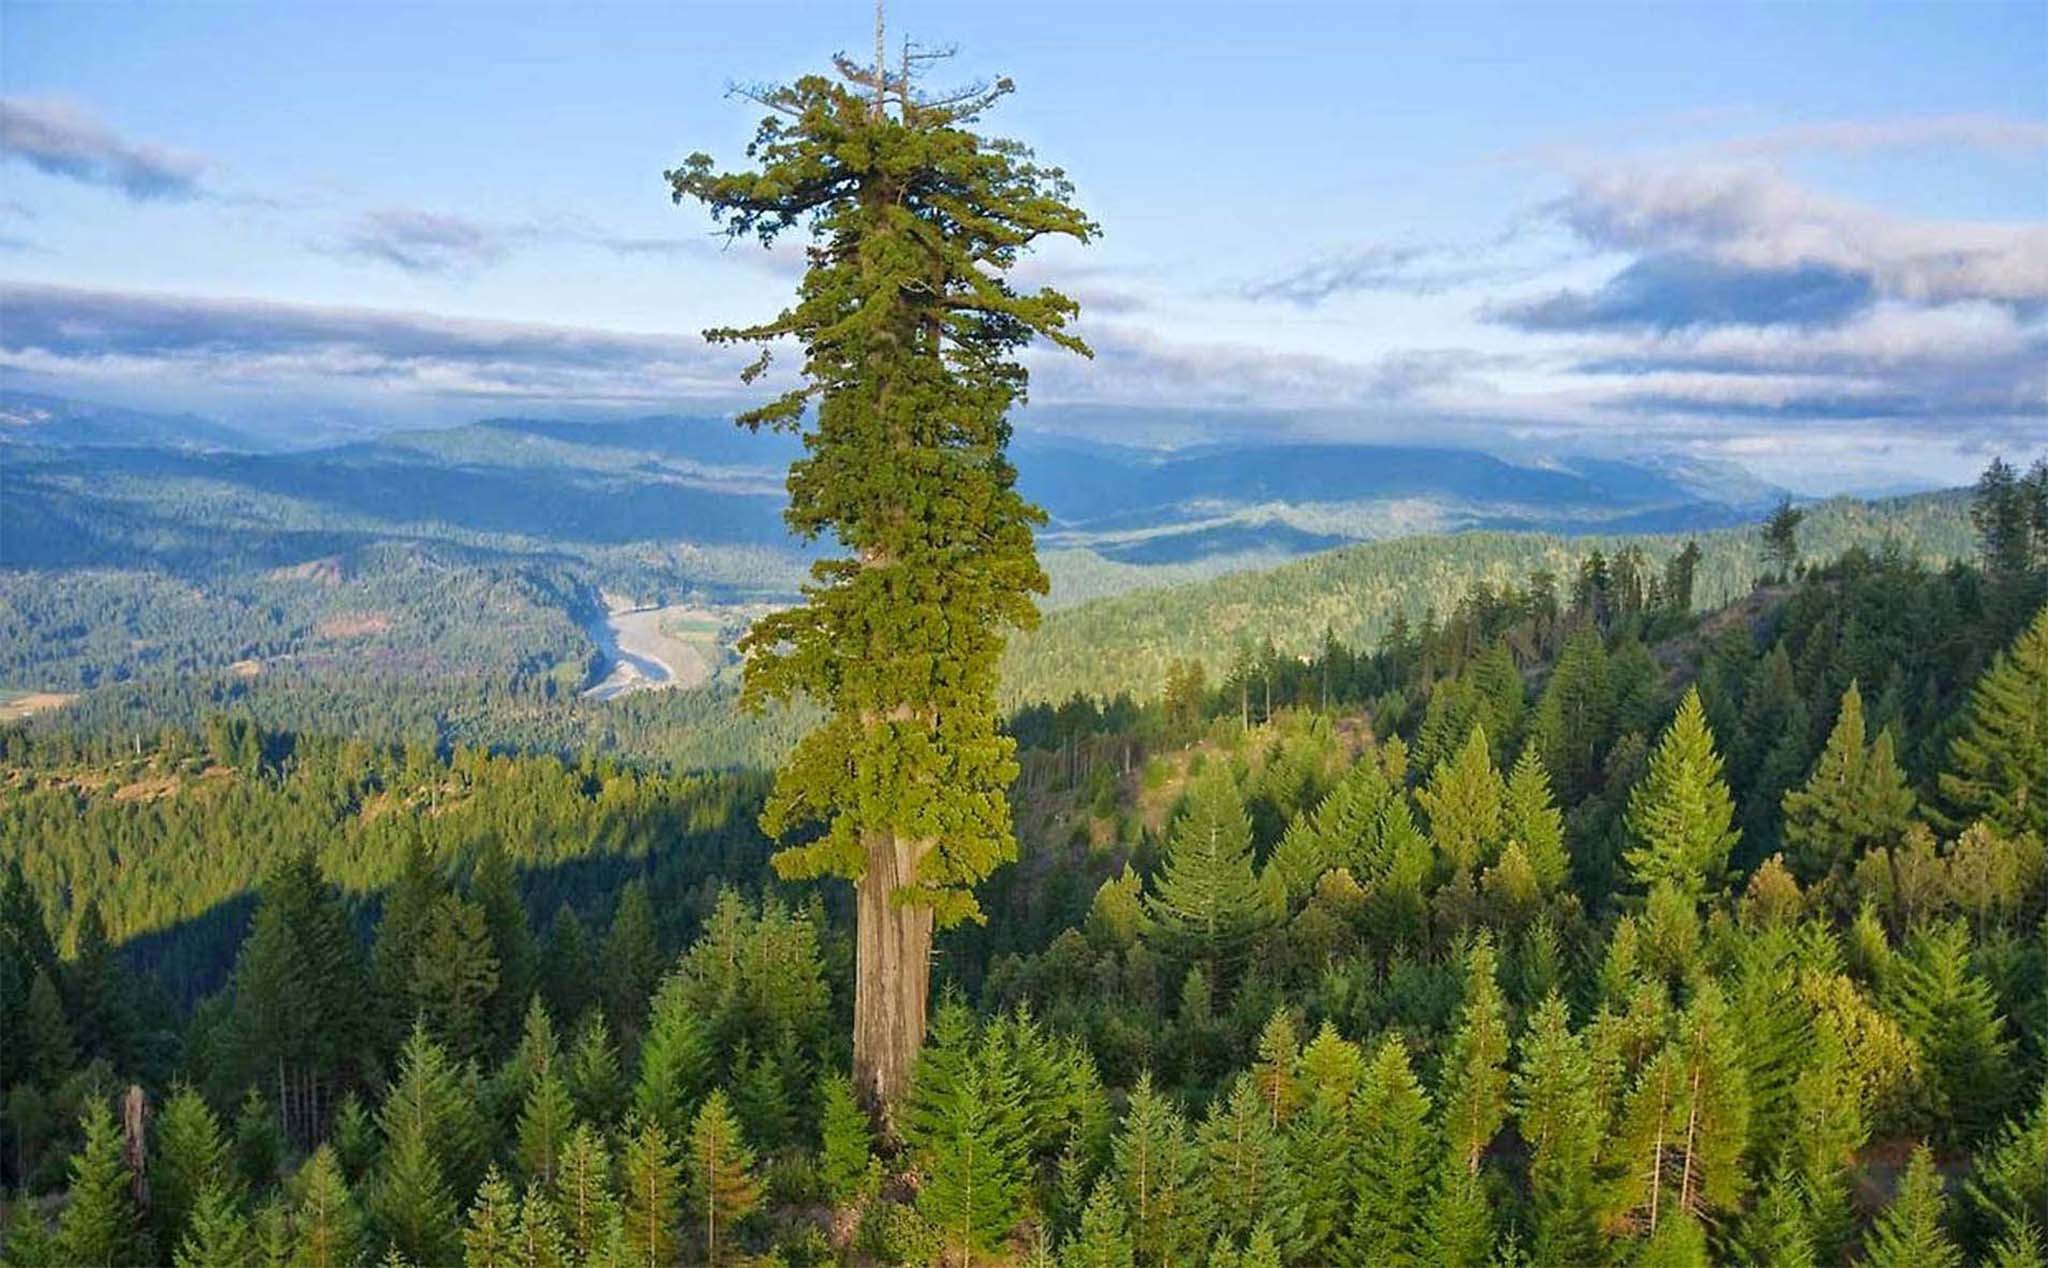 Đây là cái cây cao nhất thế giới!